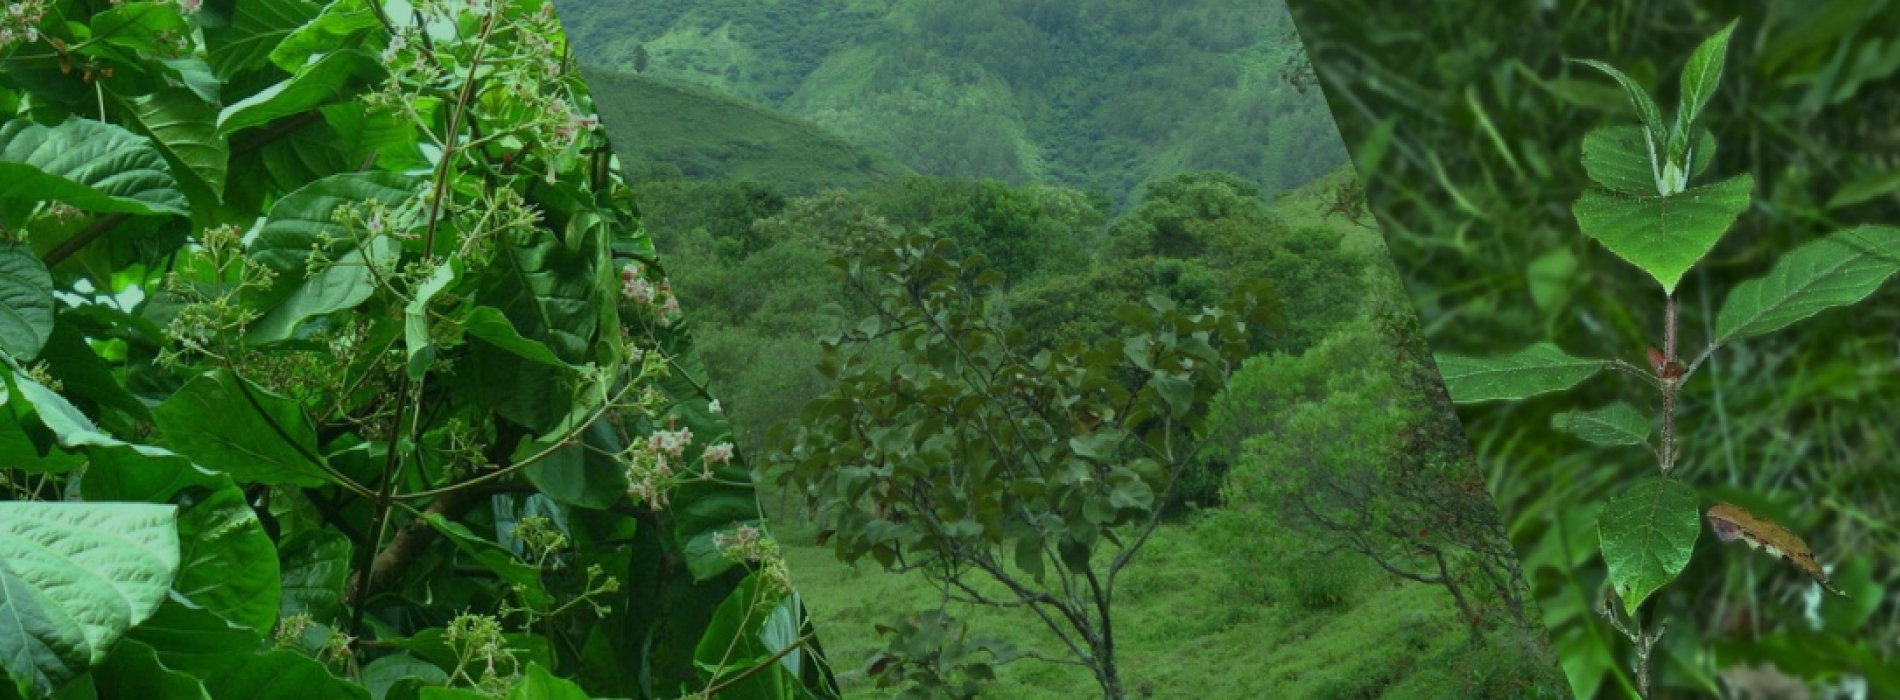 Cascarilla planta nacional de Ecuador 